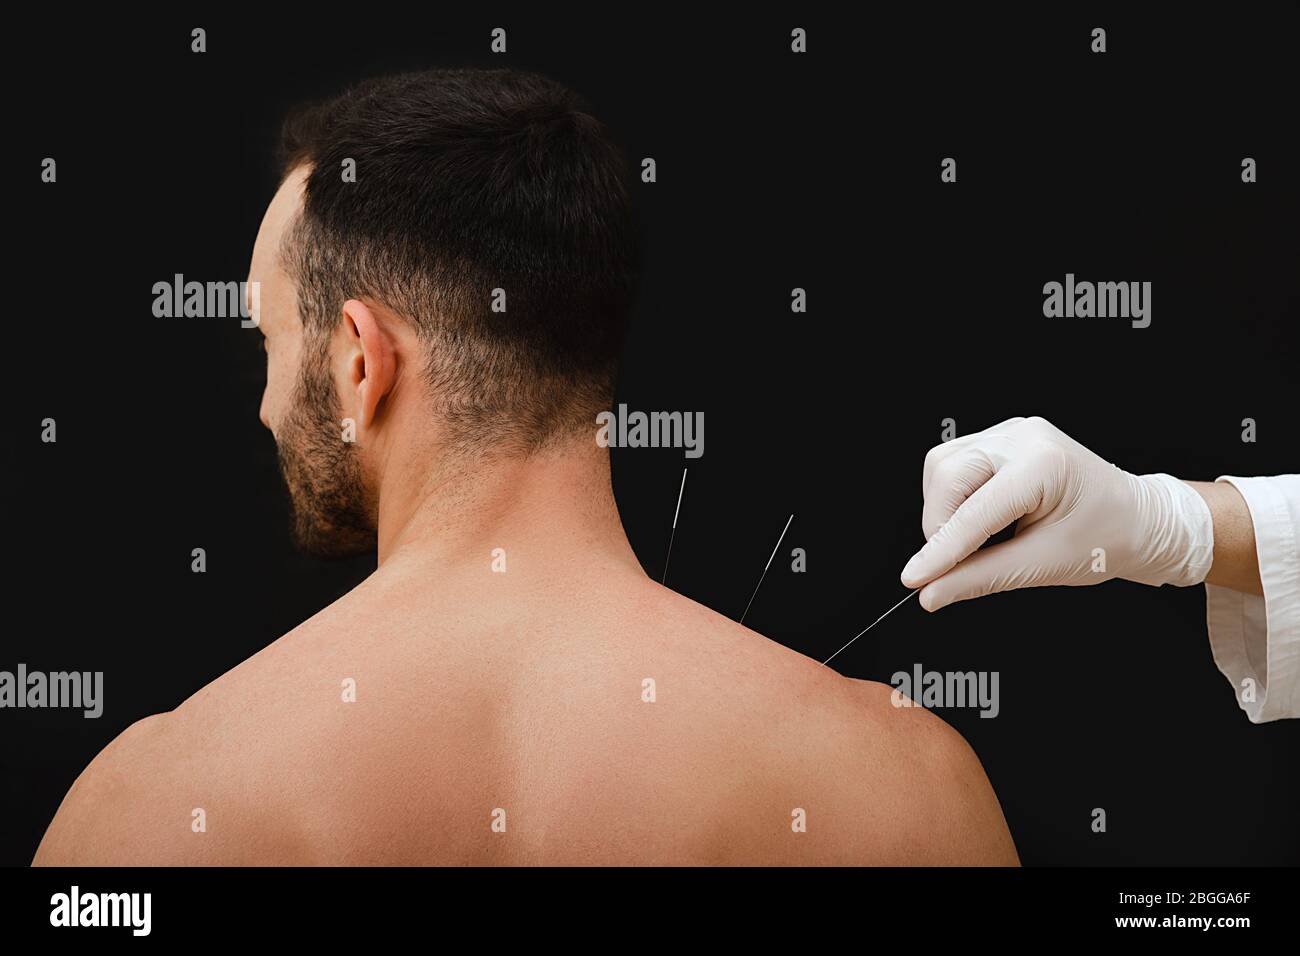 Main réflexologue avec aiguille d'acupuncture près de l'épaule d'une race caucasienne masculine. Traitement du corps d'un homme avec des méthodes de médecine chinoise. Aiguille Banque D'Images